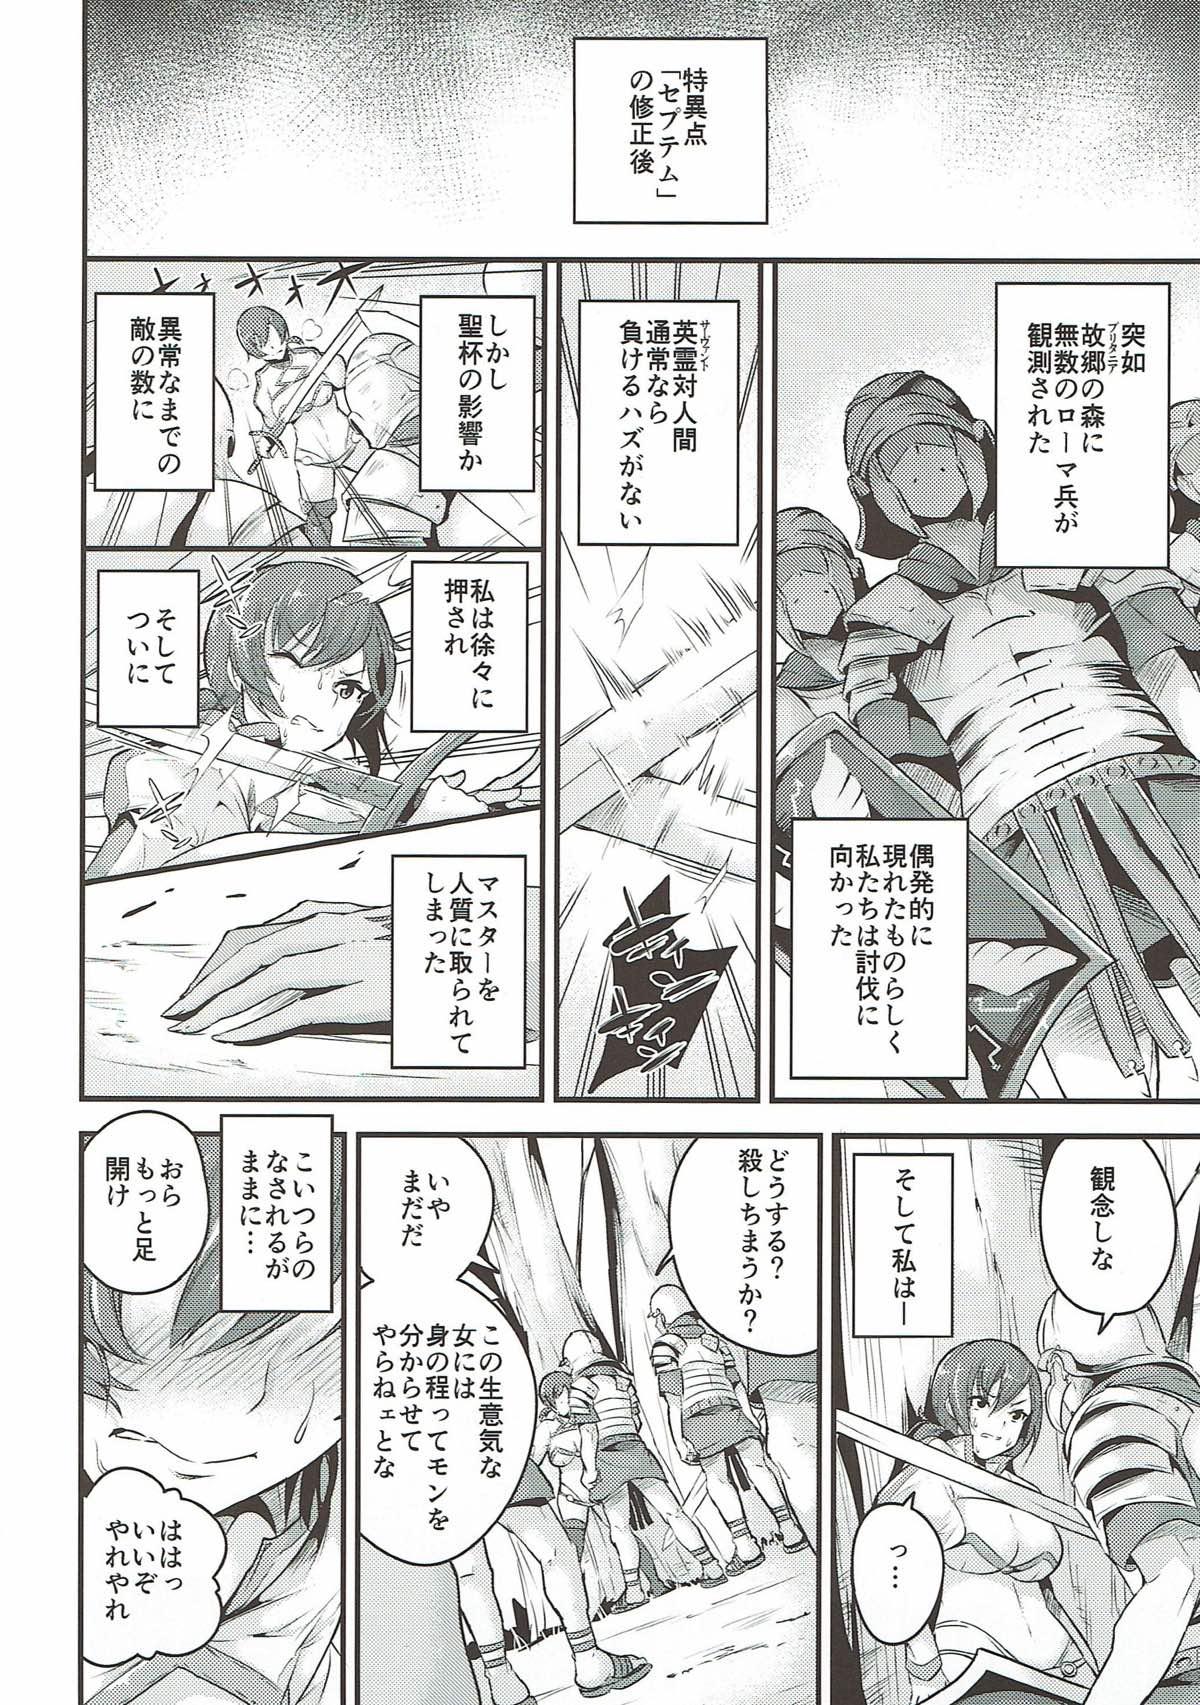 Pounding Kuppuku no Mama Servant - Fate grand order Bigass - Page 3